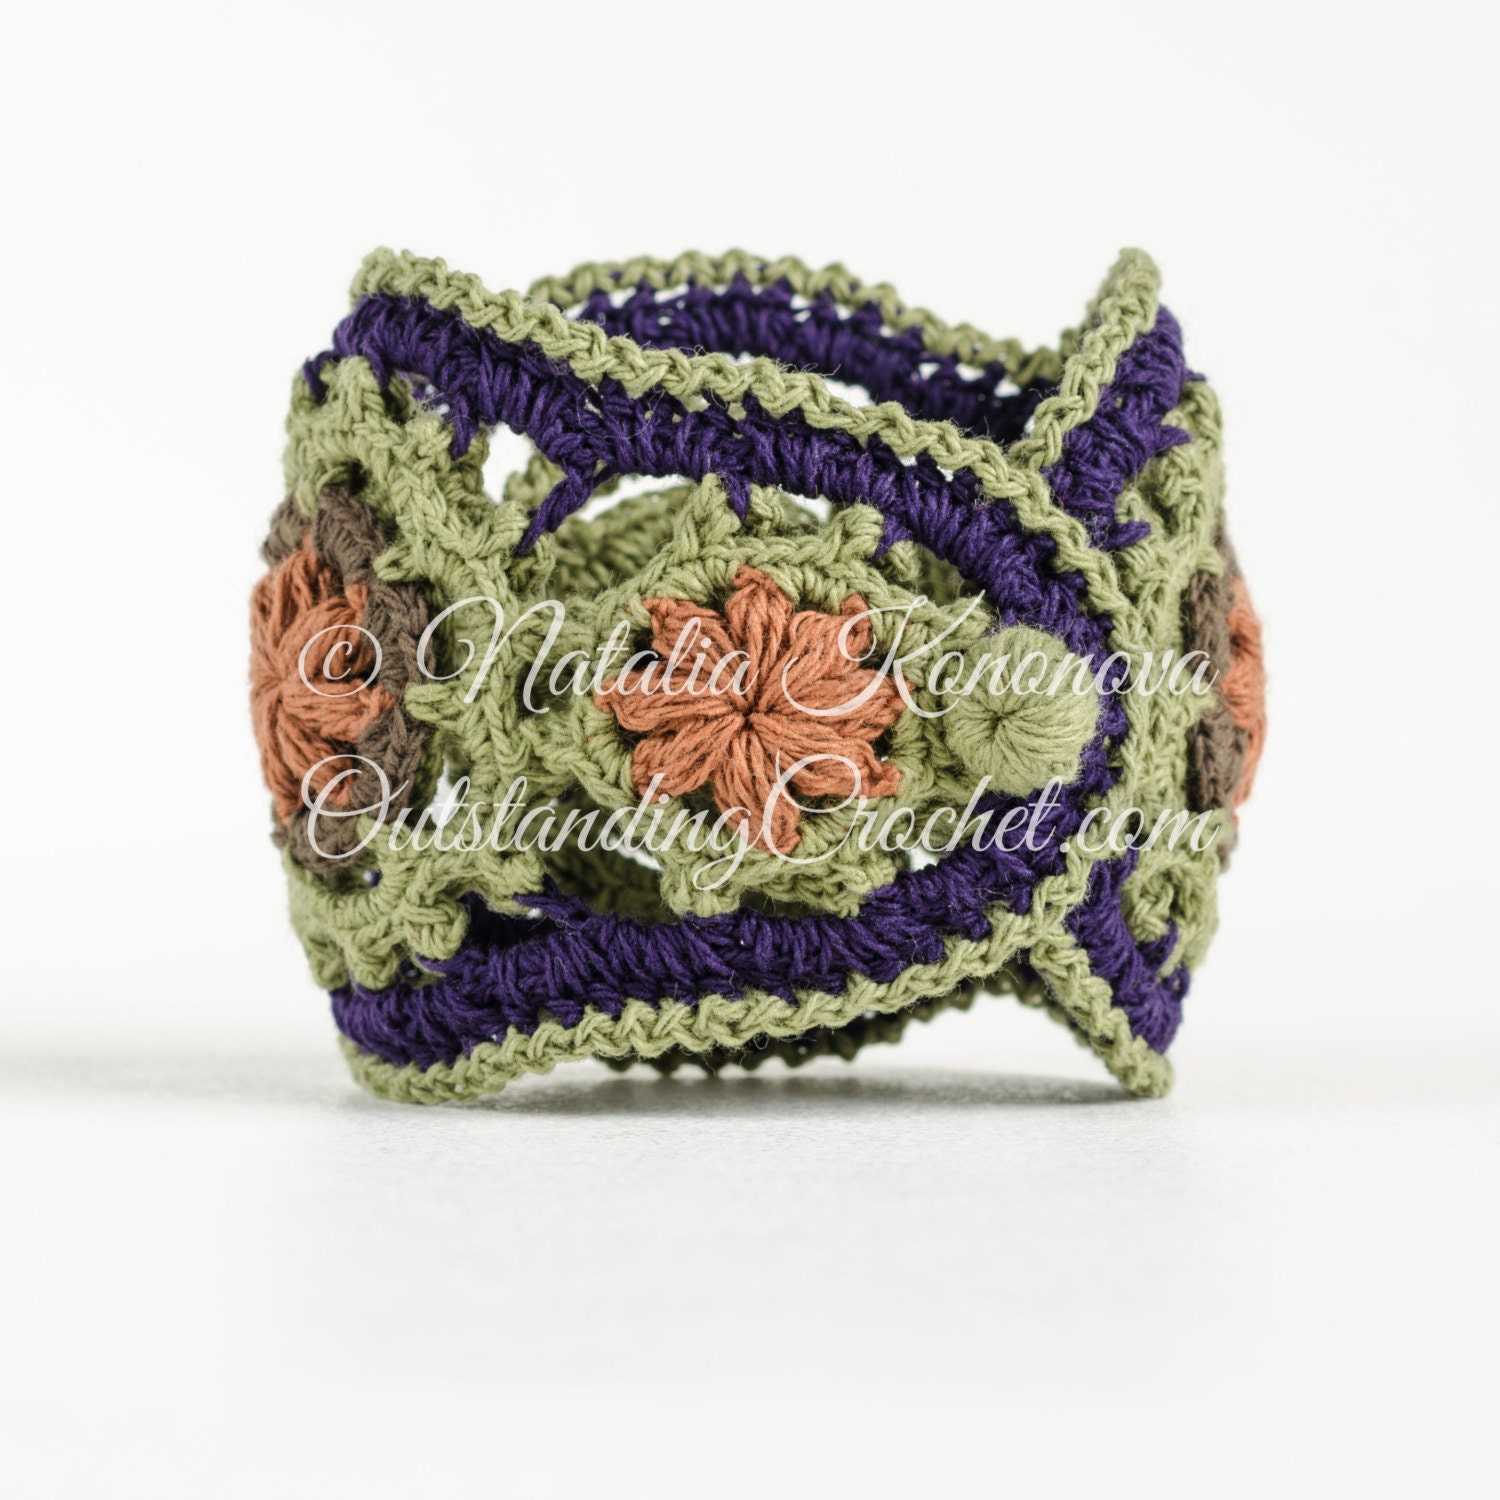 Beaded Jewelry Pattern, Crochet Bracelet, Jewelry Tutorial, Easy Crochet  Pattern, Boho Bracelet Tutorial, Crochet With Beads, DIY 20 - Etsy